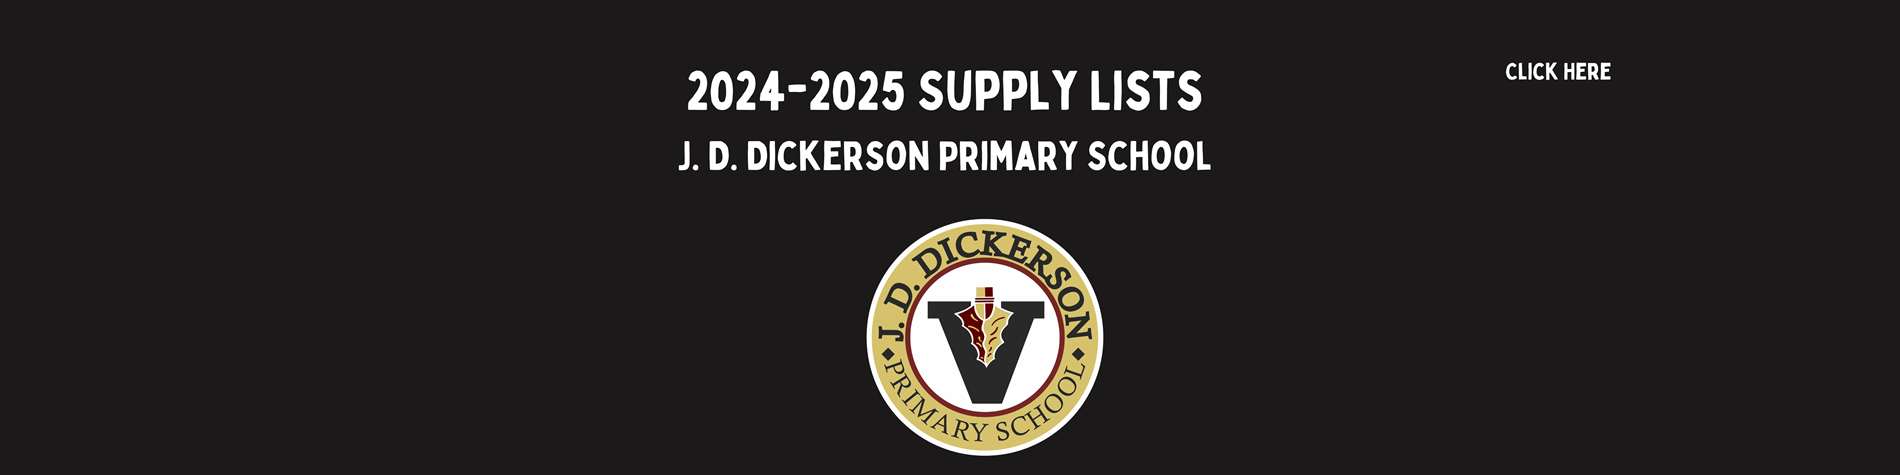 2024-2025 Supply List